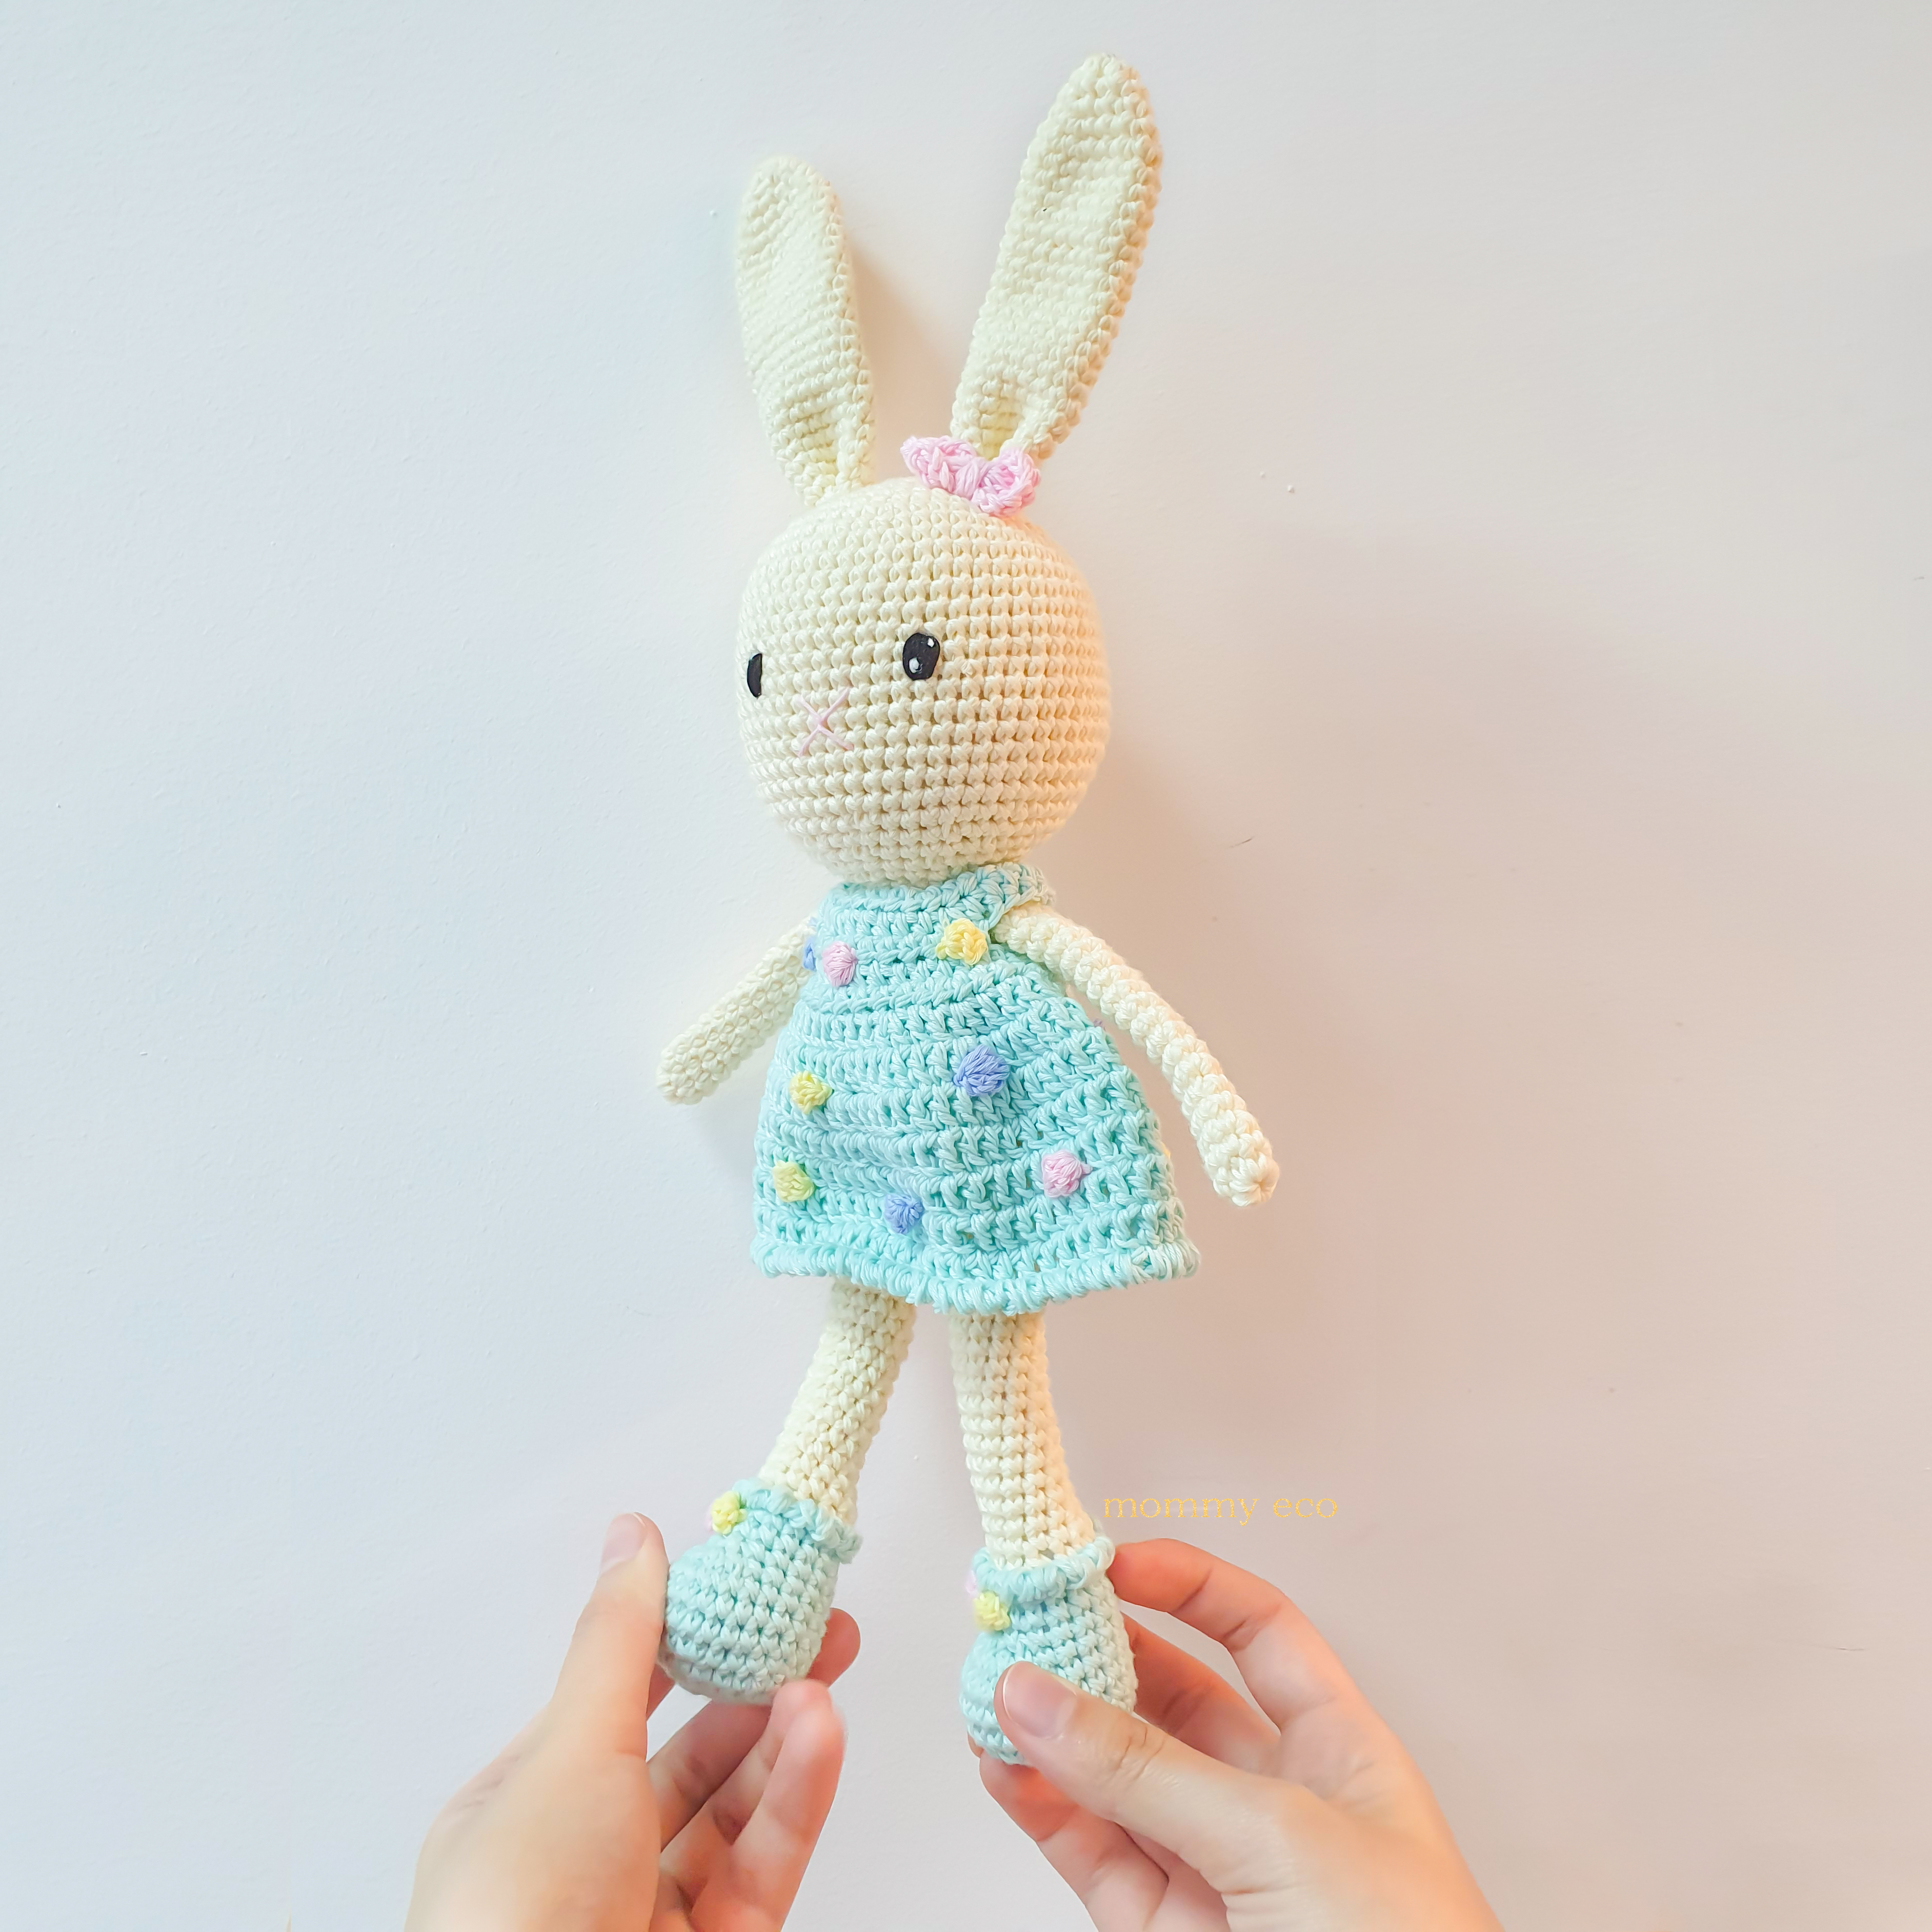 Thú len handmade amigurumi, đan móc thú len, đồ chơi len an toàn cho bé. Bé Thỏ váy xanh điệu đà